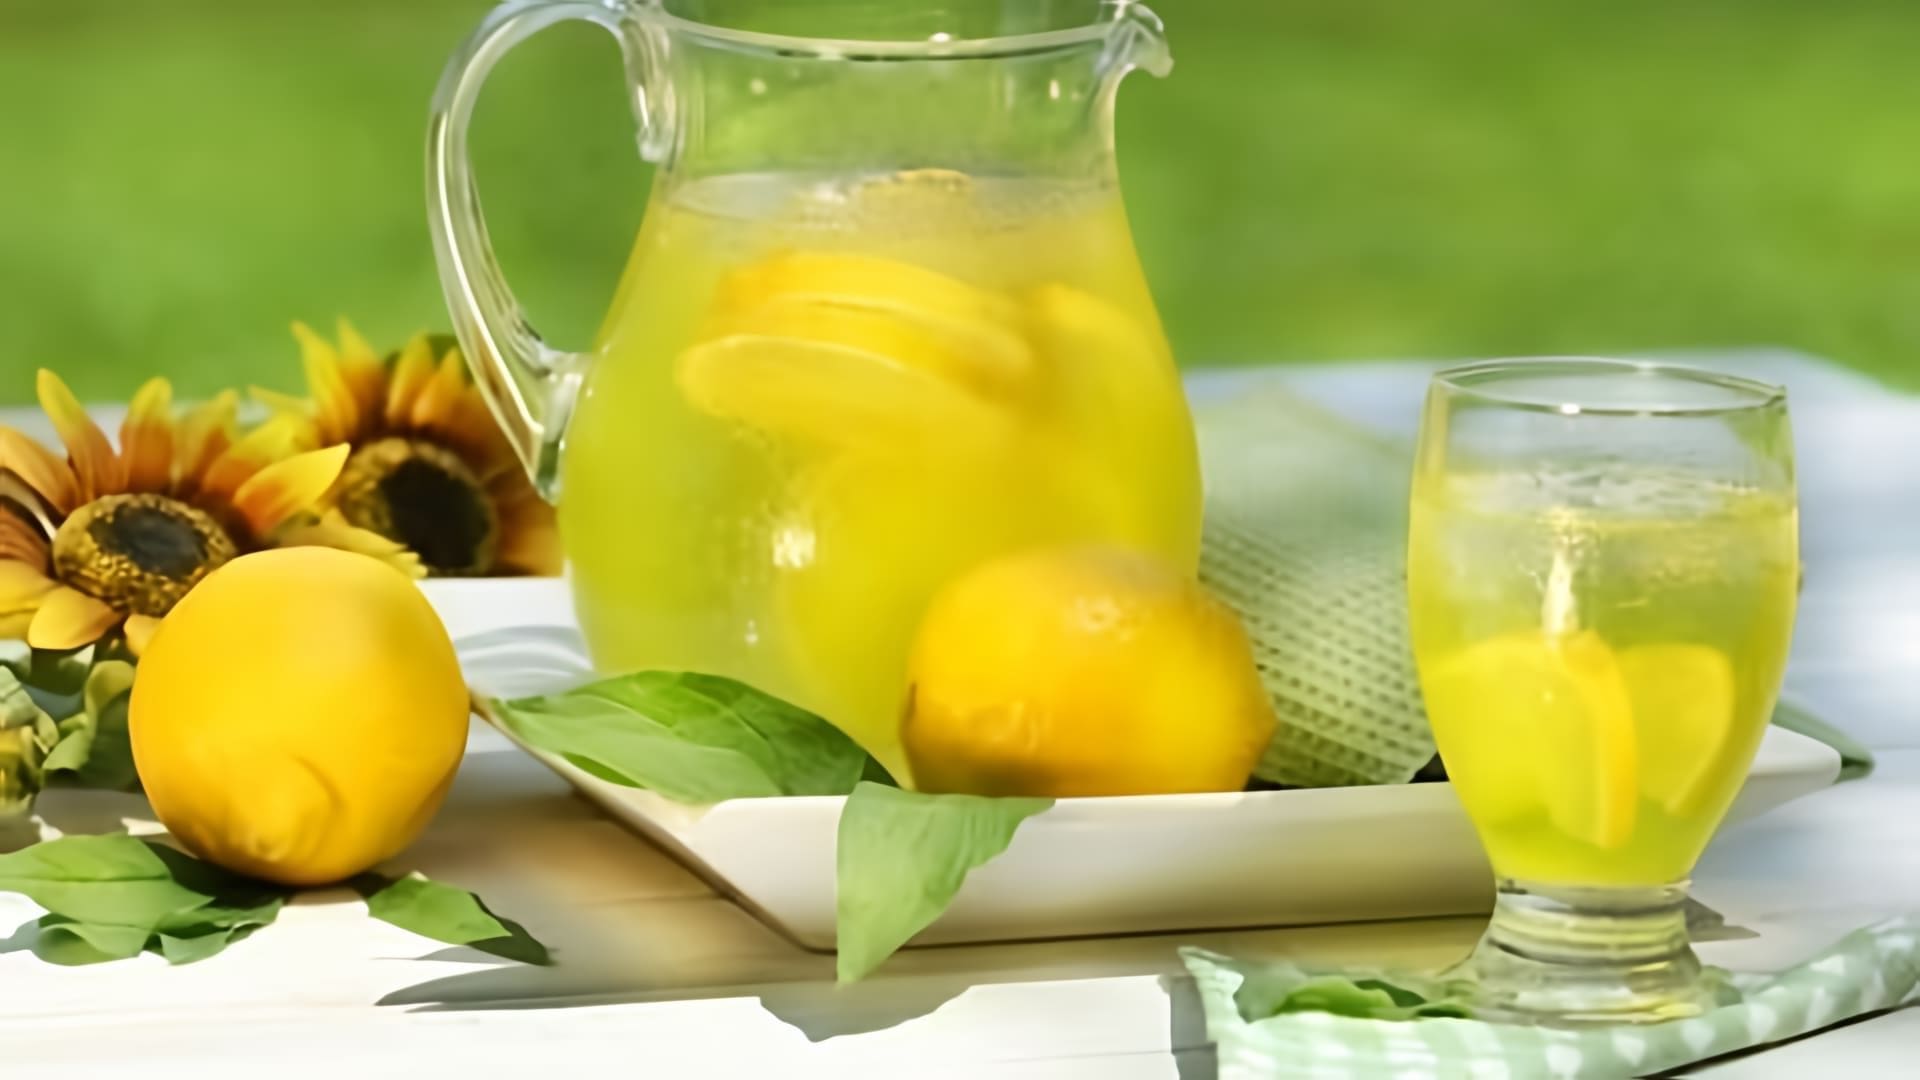 В этом видео демонстрируется рецепт имбирного лимонада, который является вкусным и полезным напитком